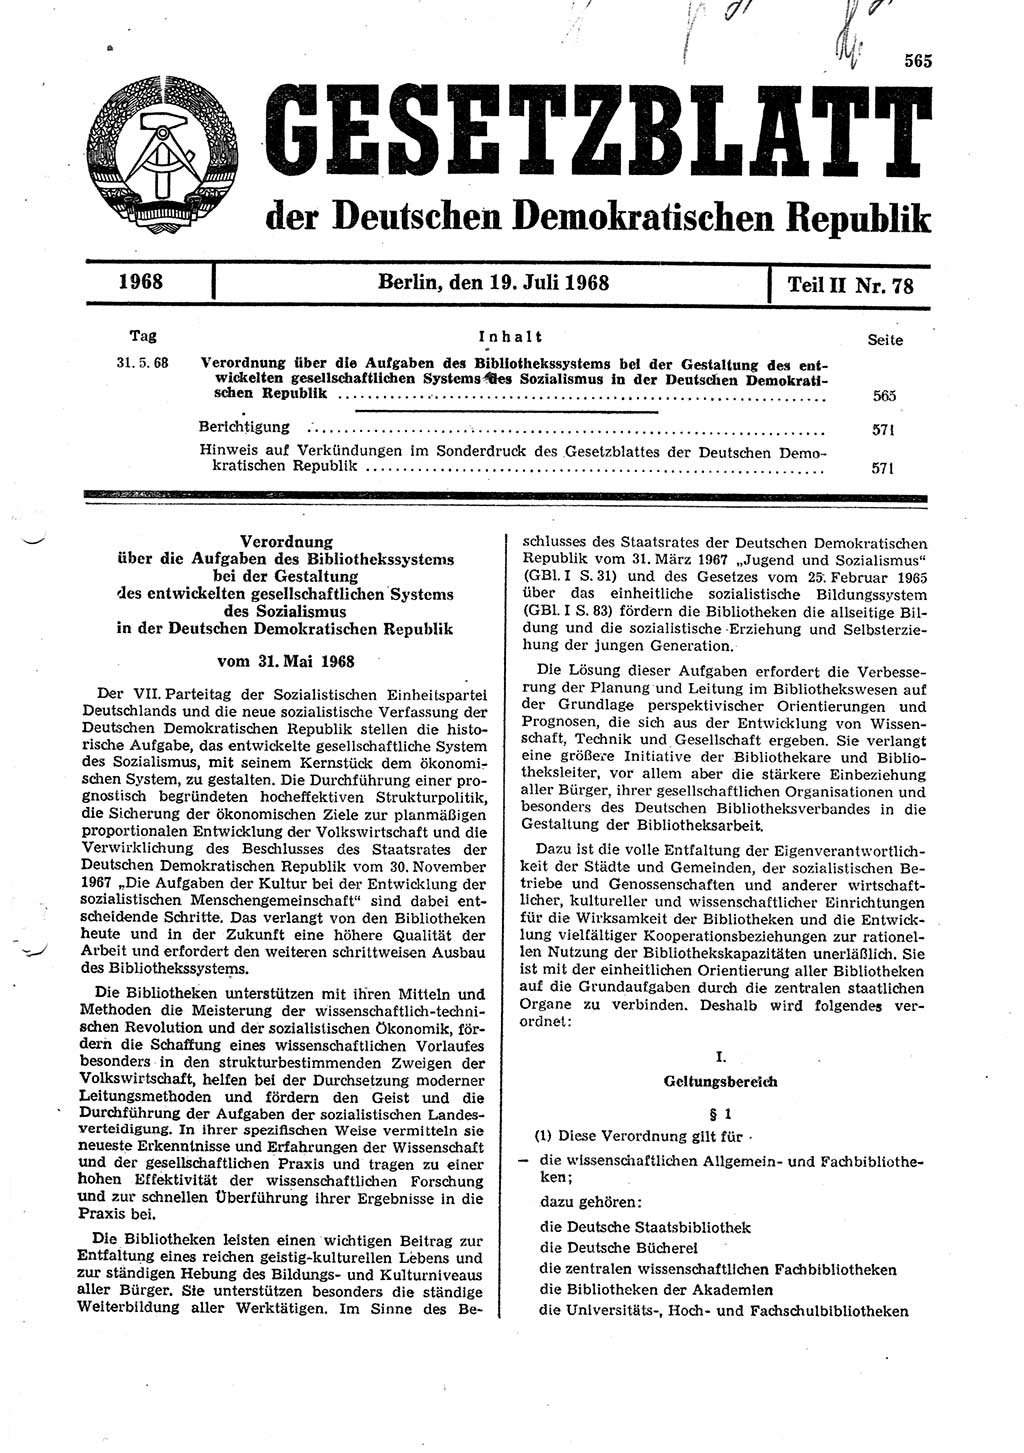 Gesetzblatt (GBl.) der Deutschen Demokratischen Republik (DDR) Teil ⅠⅠ 1968, Seite 565 (GBl. DDR ⅠⅠ 1968, S. 565)